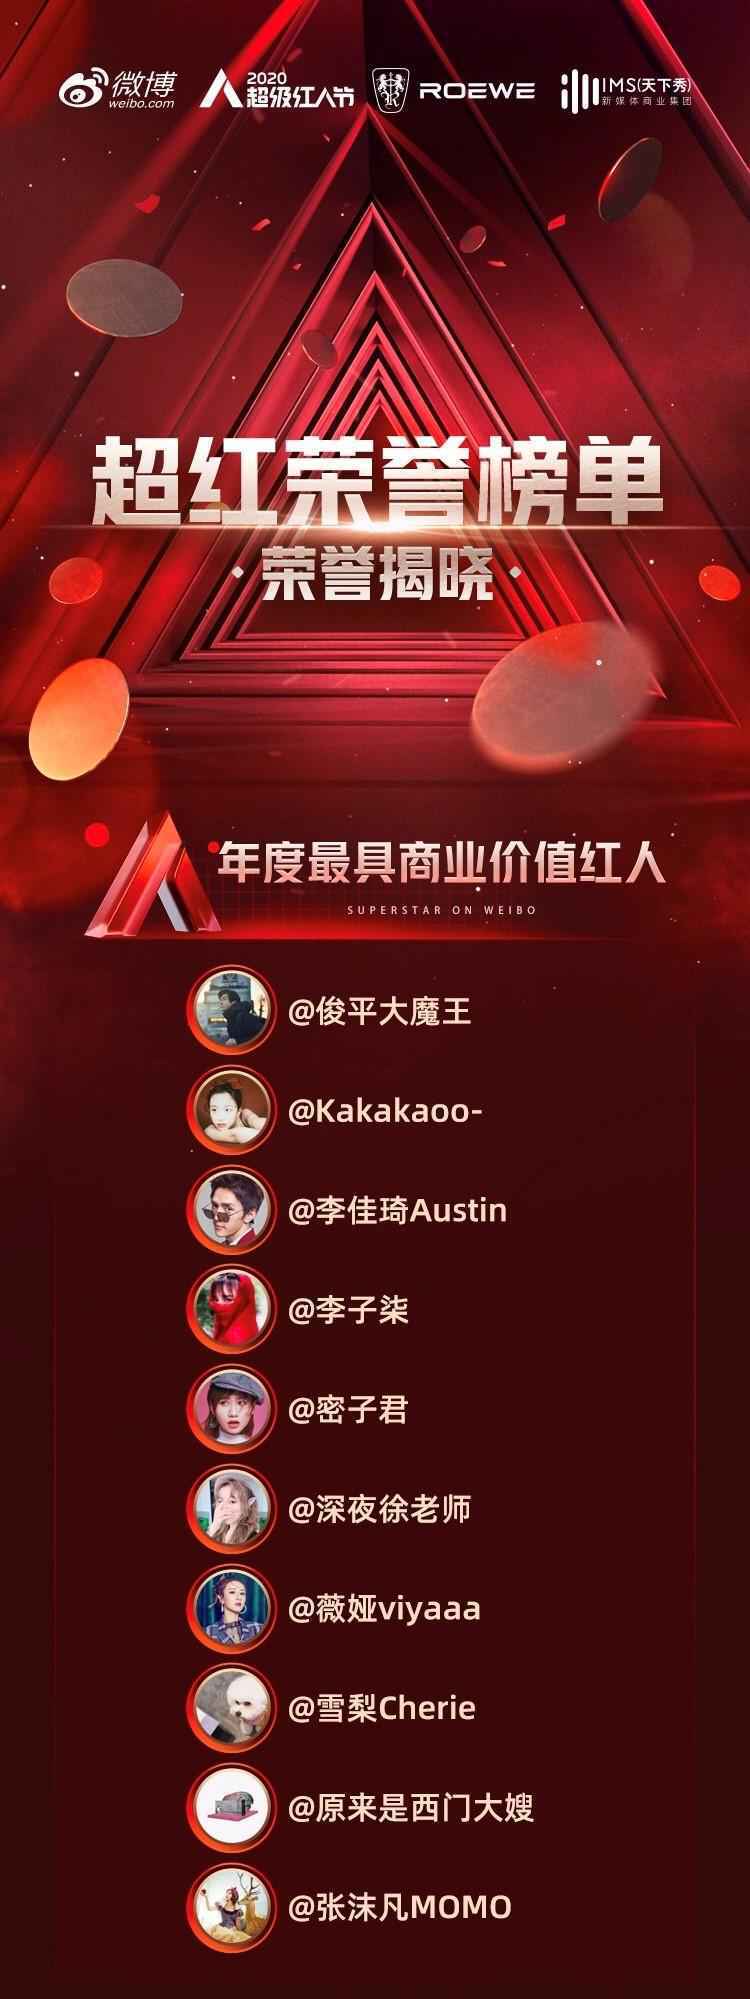 2020微博超级红人节年度荣誉榜公布 俊平大魔王、李佳琦等荣誉上榜